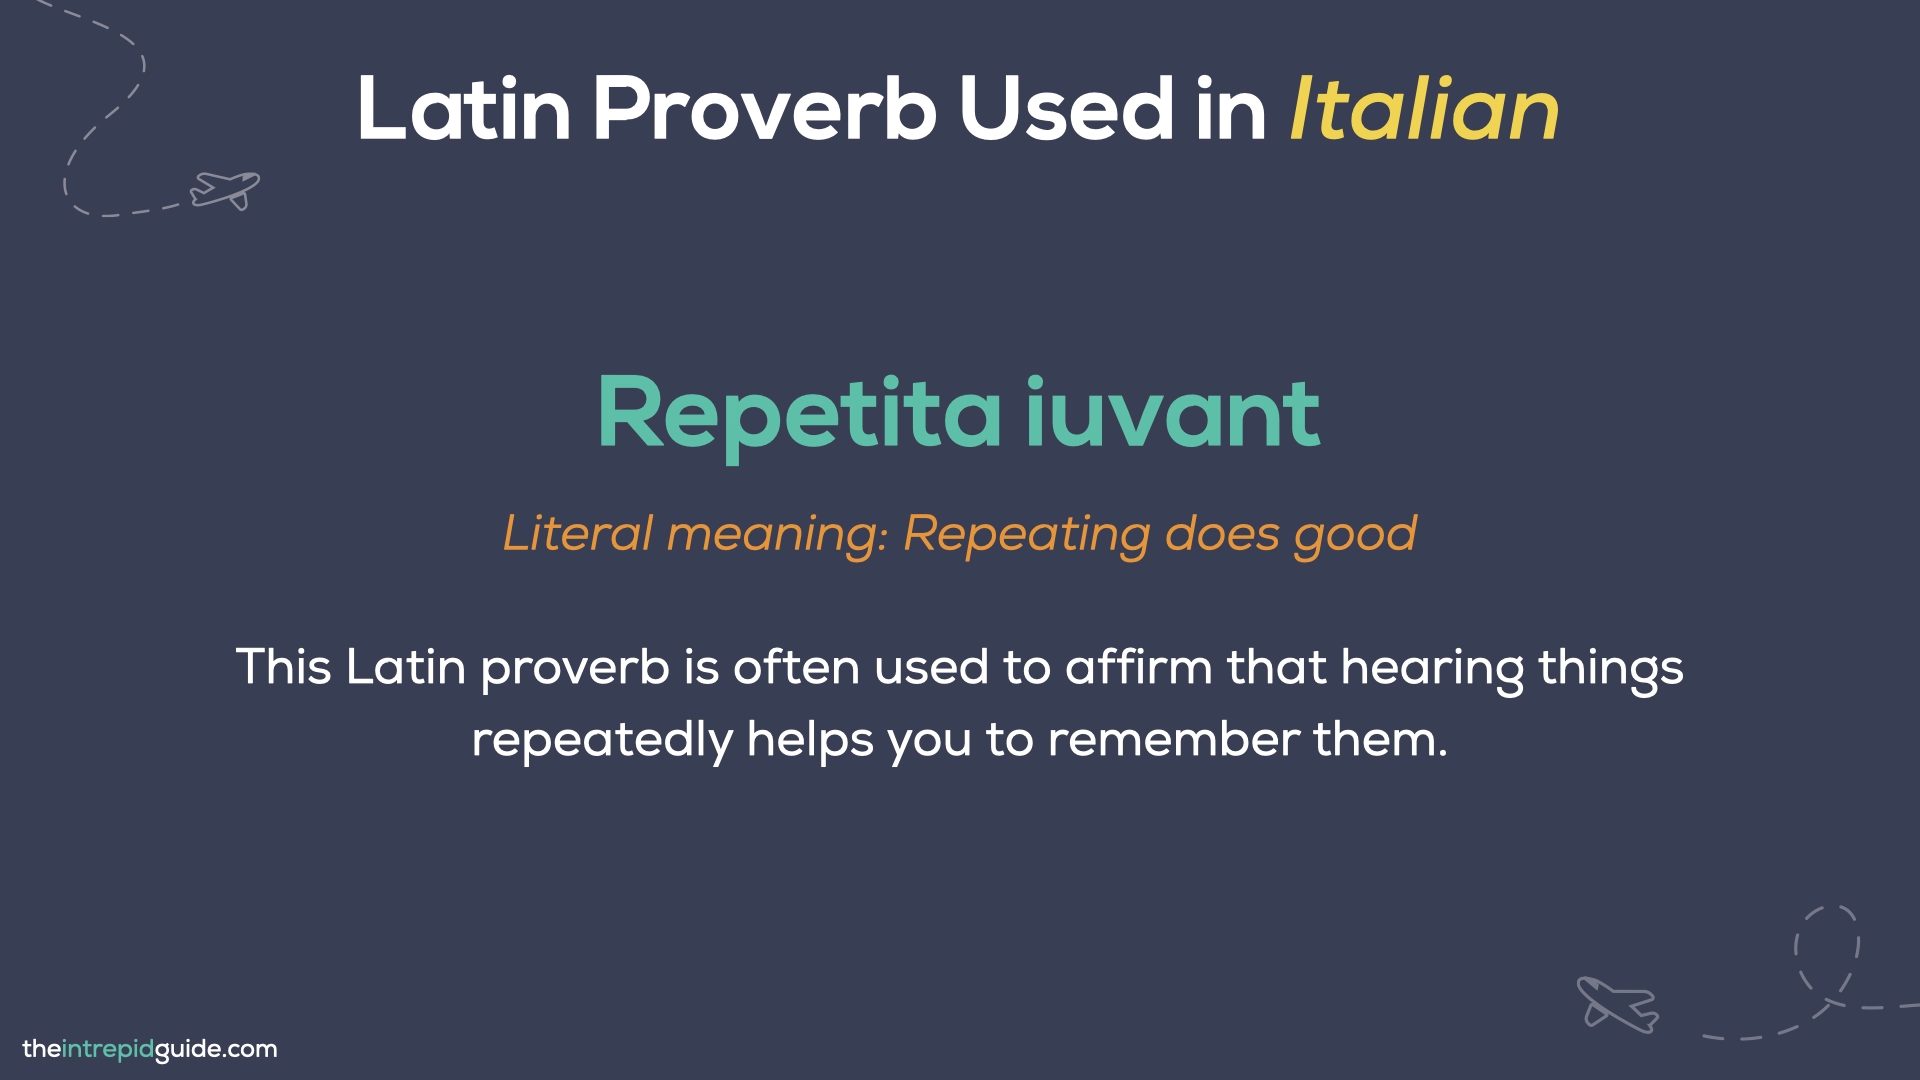  Italian Proverbs - Repetita iuvant